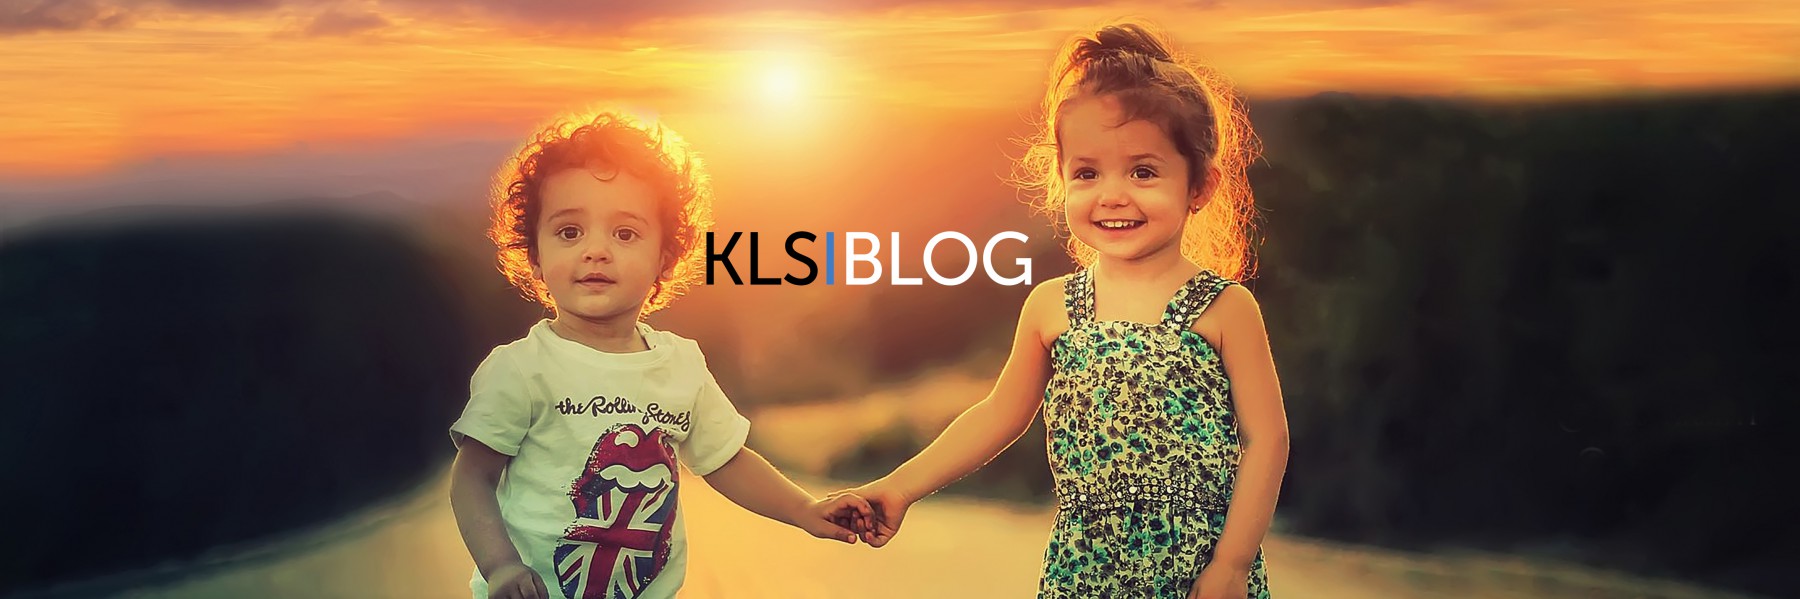 KIDS LIVE SAFE: A Family Safety Blog